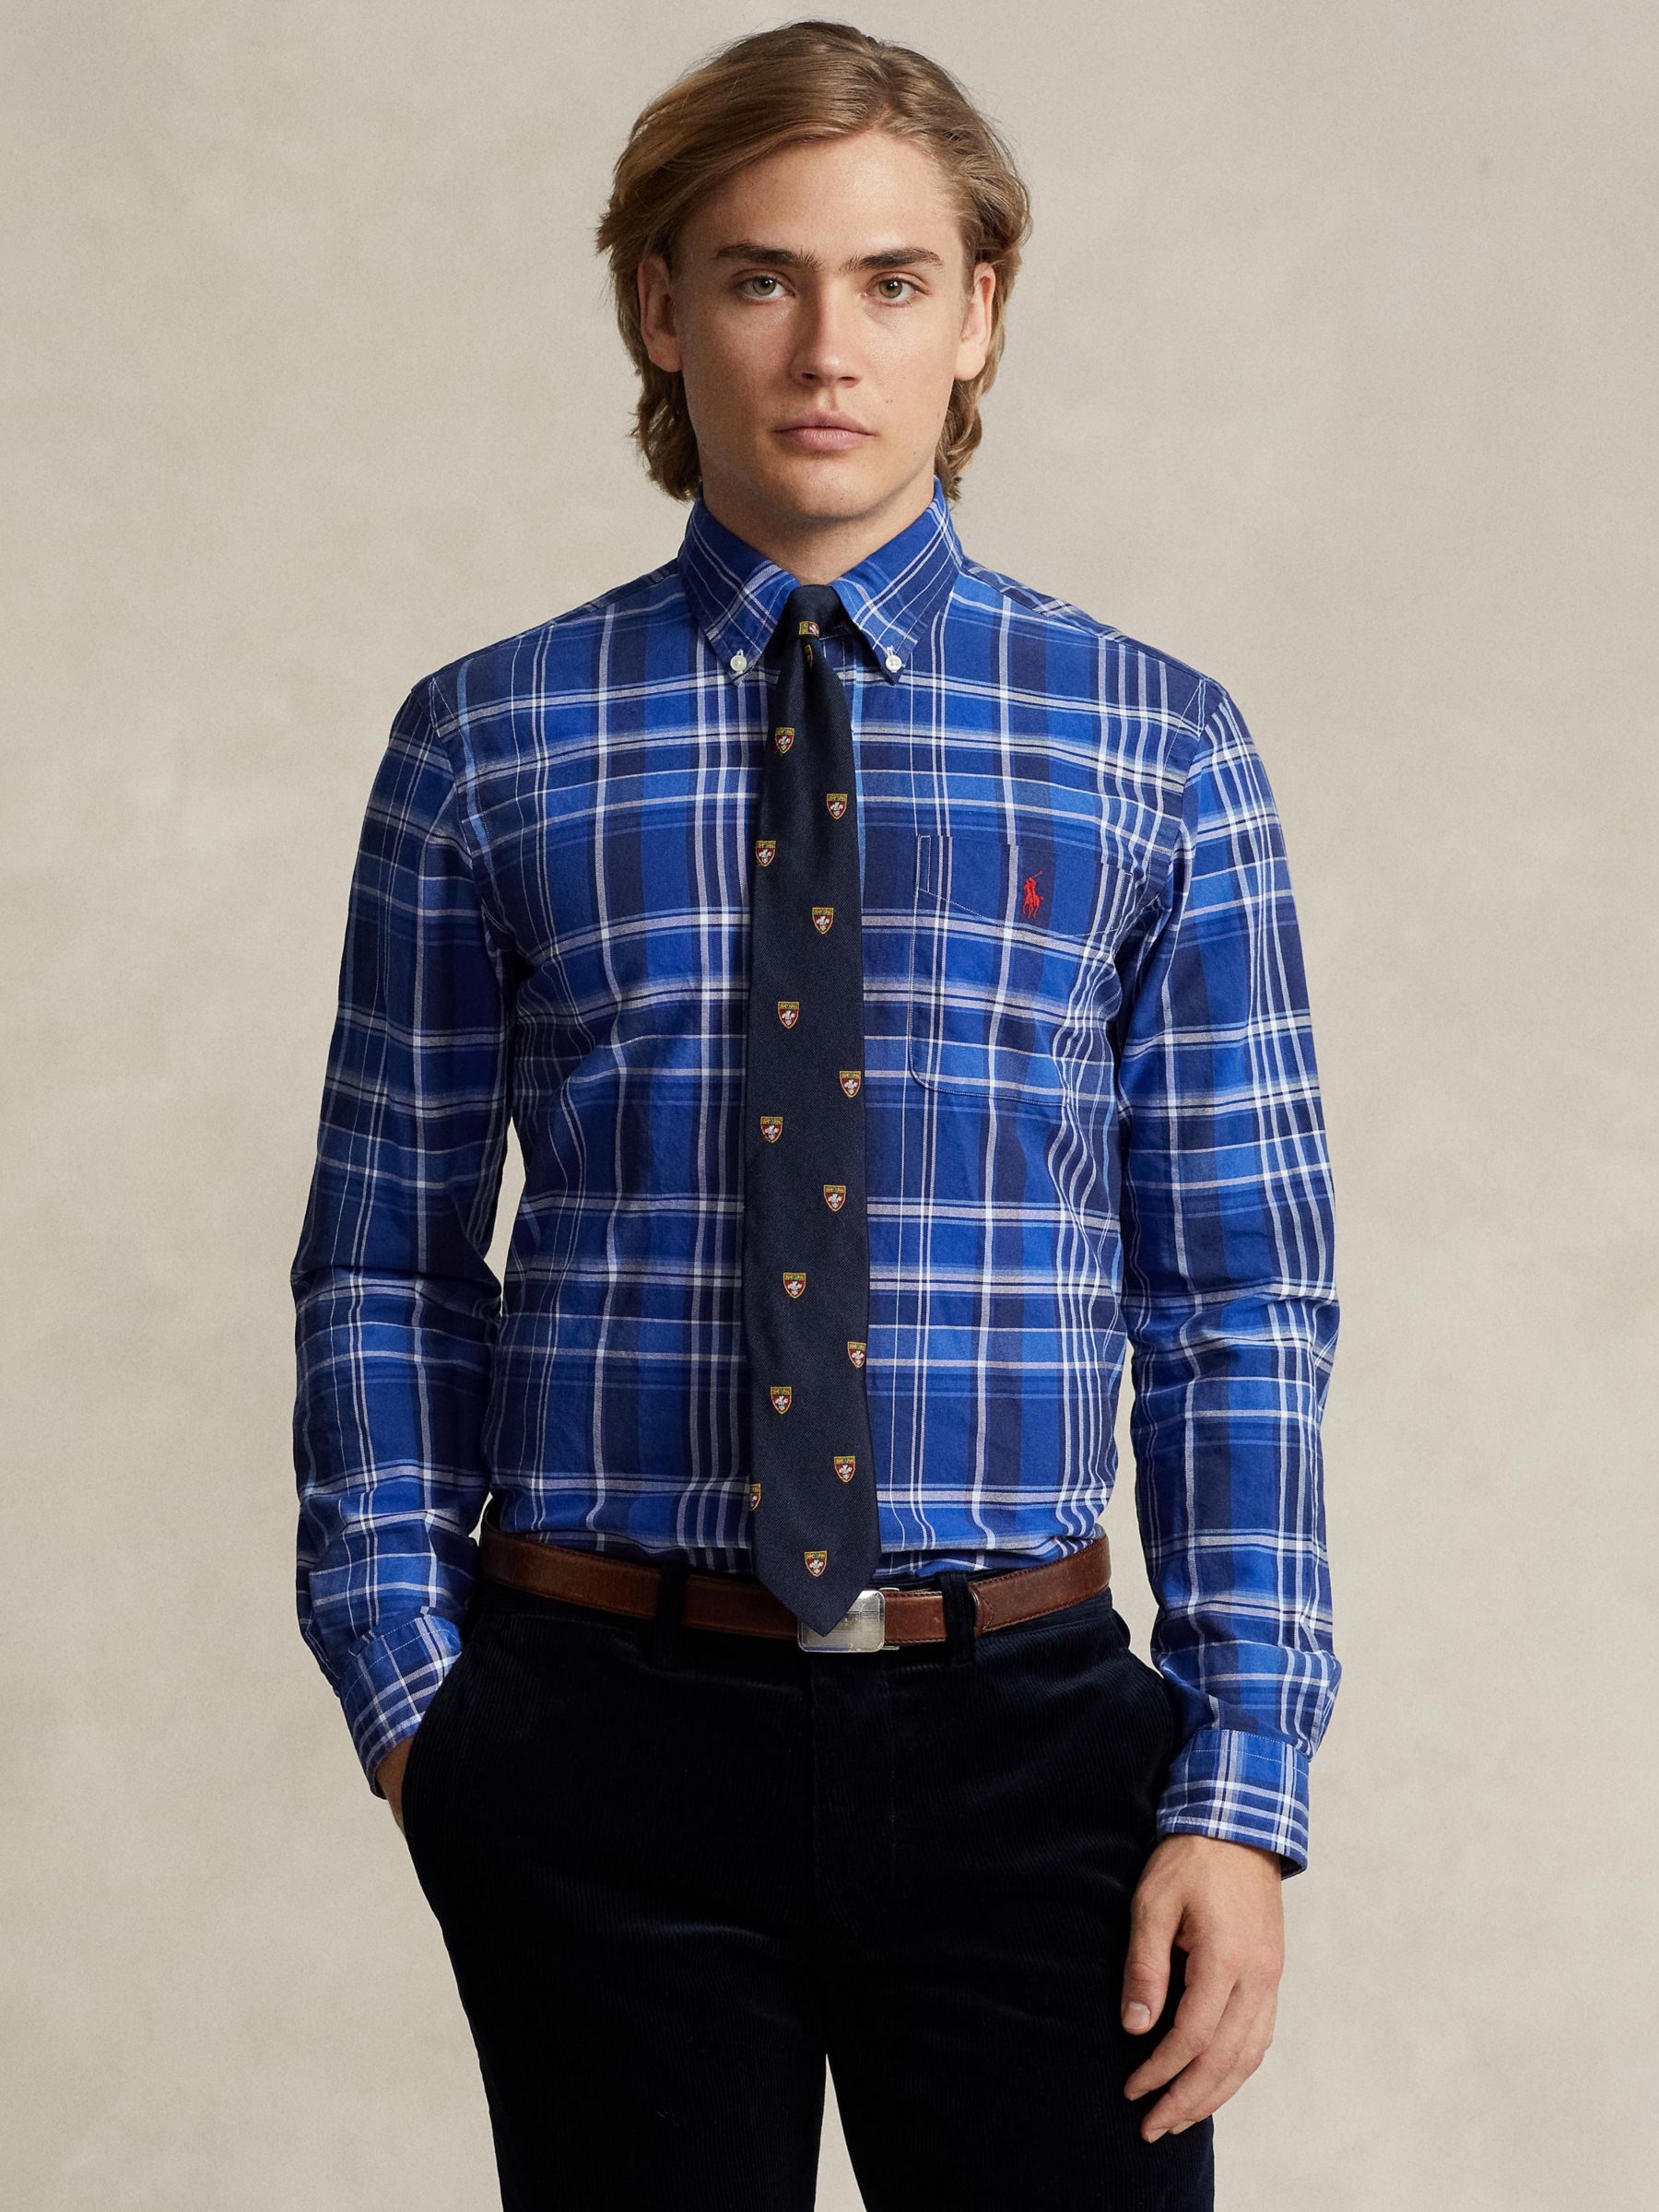 Ralph Lauren Polo Ralph Lauren Check Long Sleeve Cotton Shirt, Blue/Multi, S